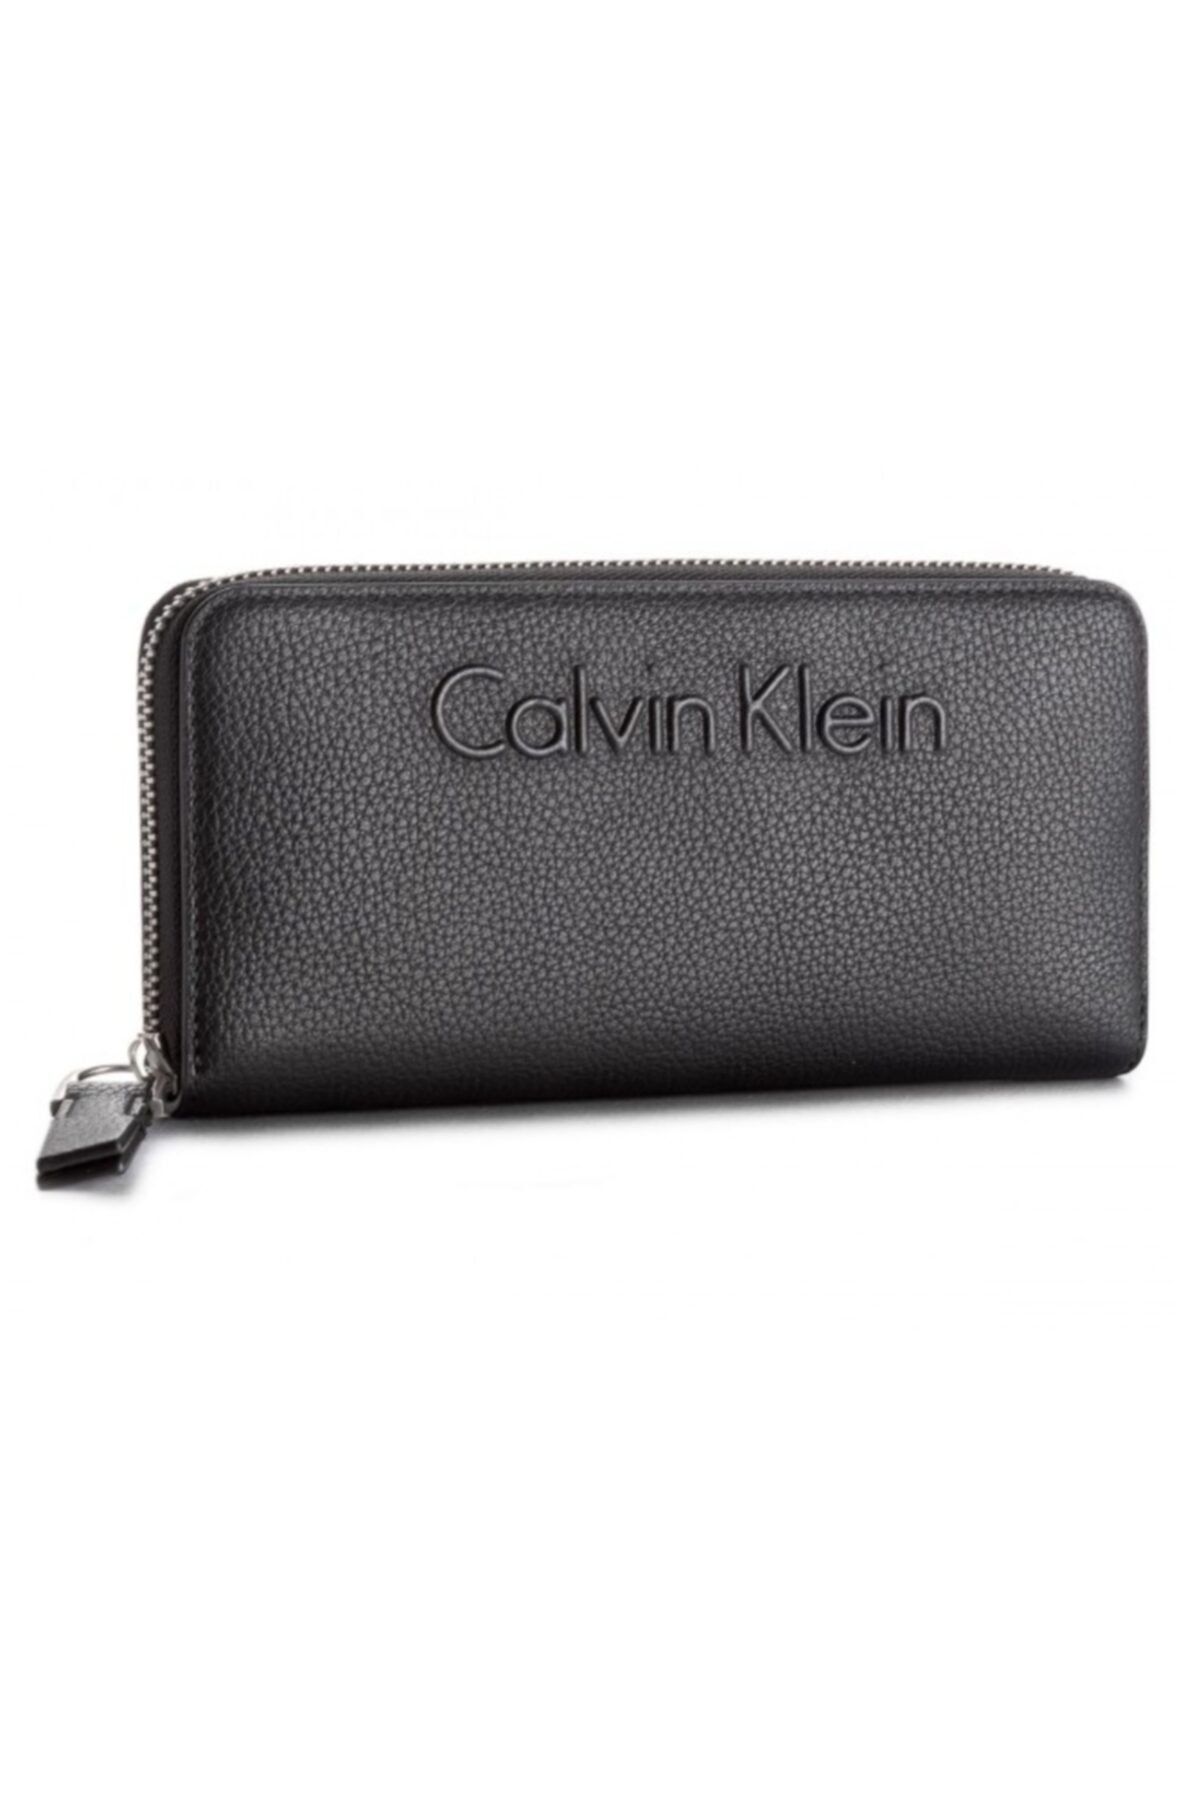 Calvin Klein Calvin Cuzdan